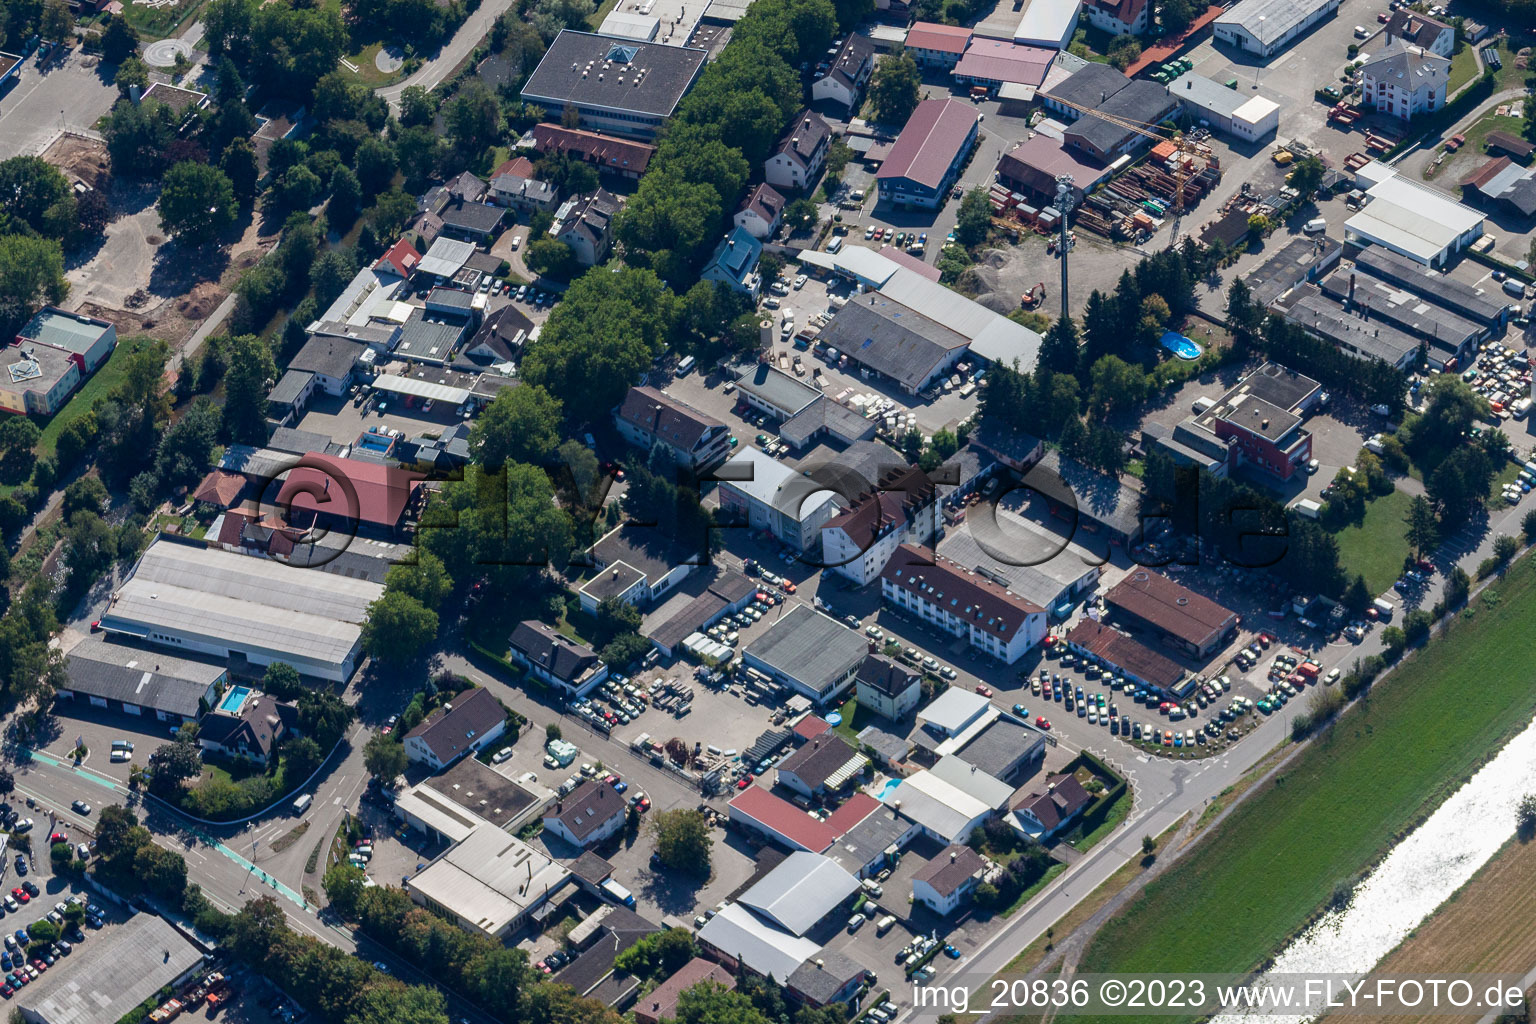 Offenburg im Bundesland Baden-Württemberg, Deutschland aus der Luft betrachtet